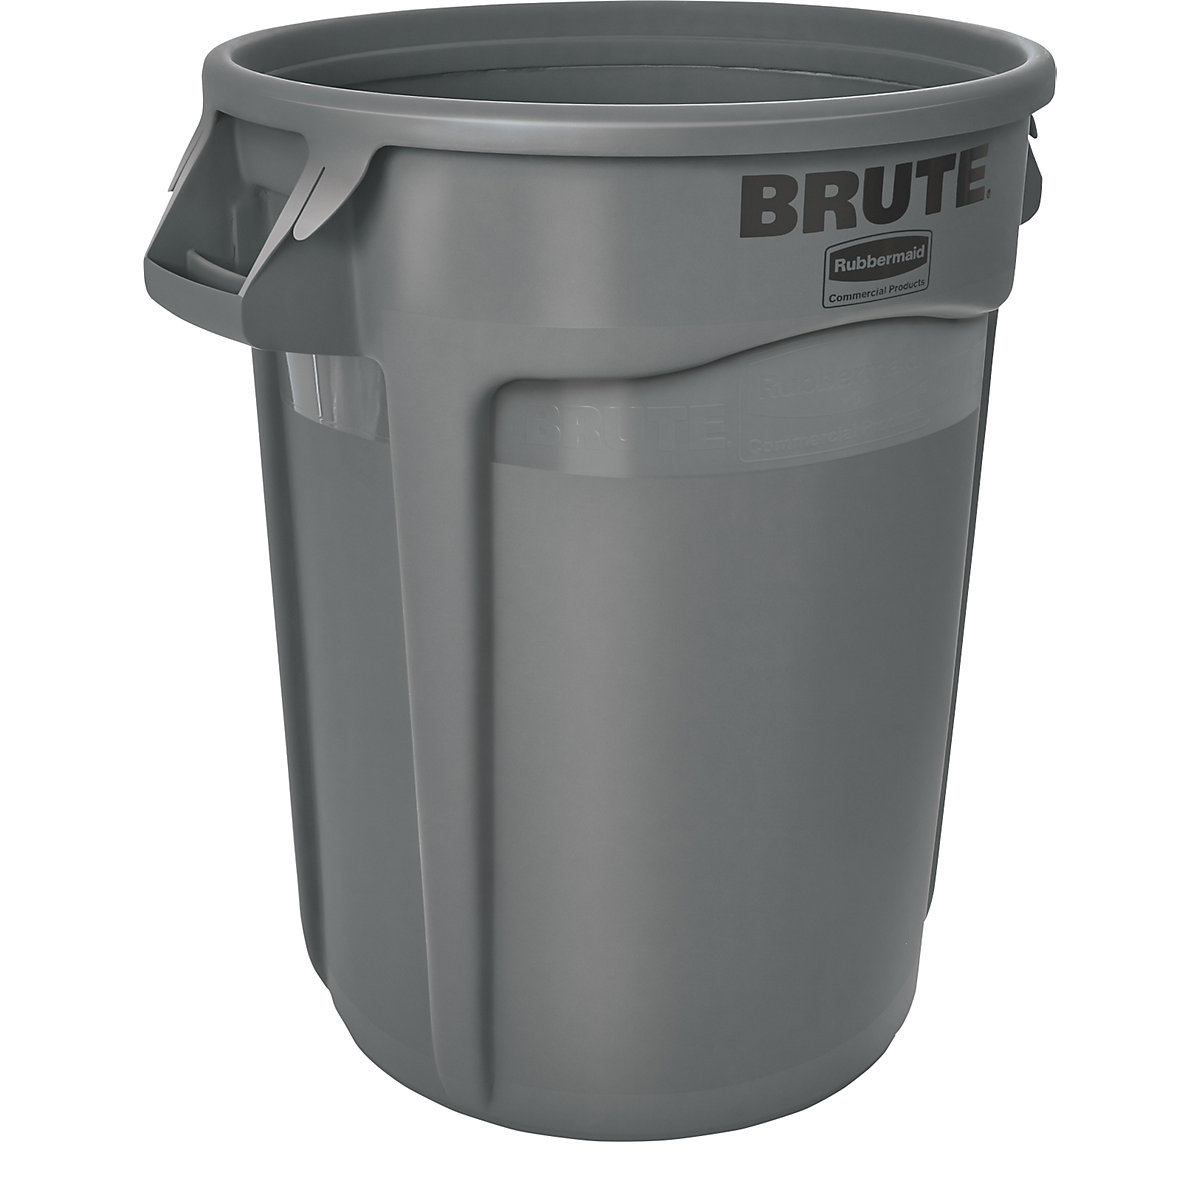 Univerzalni kontejner BRUTE®, okrugli – Rubbermaid